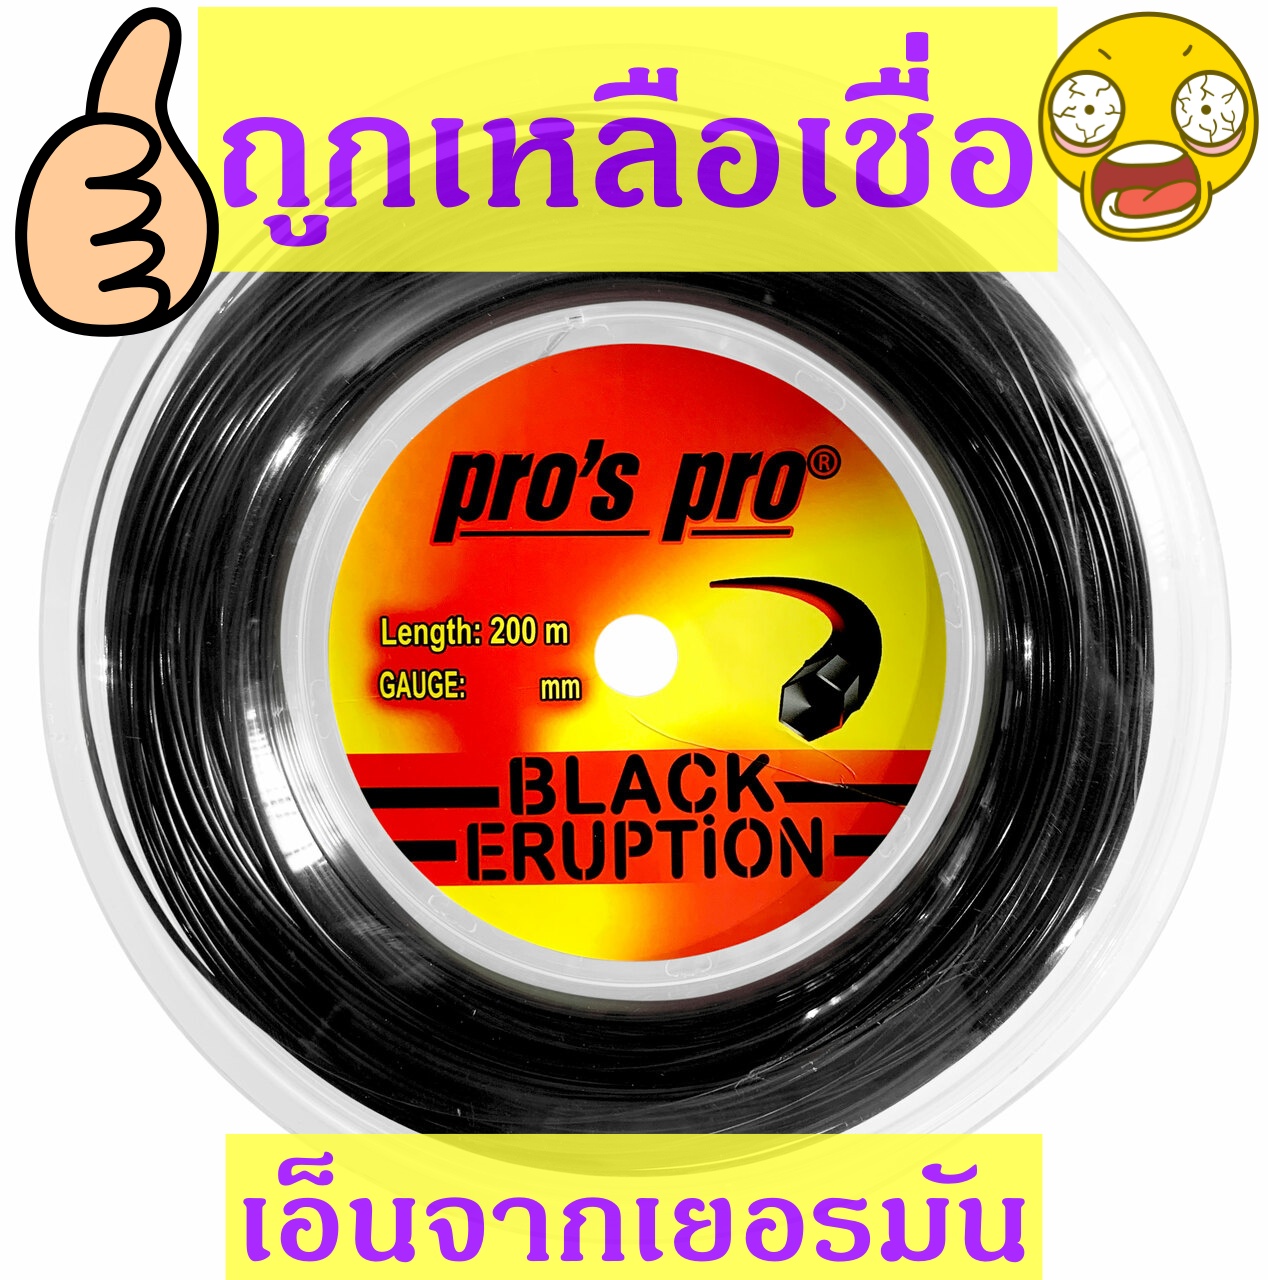 เอ็นเทนนิส ++Pro's Pro Black Eruption #17 1.18mm ++ ตัดแบ่งจากม้วนเส้นละ 139 บาท++ ส่งเร็ว ++ราคาพิเศษ 3 ชุด 400 บาท++